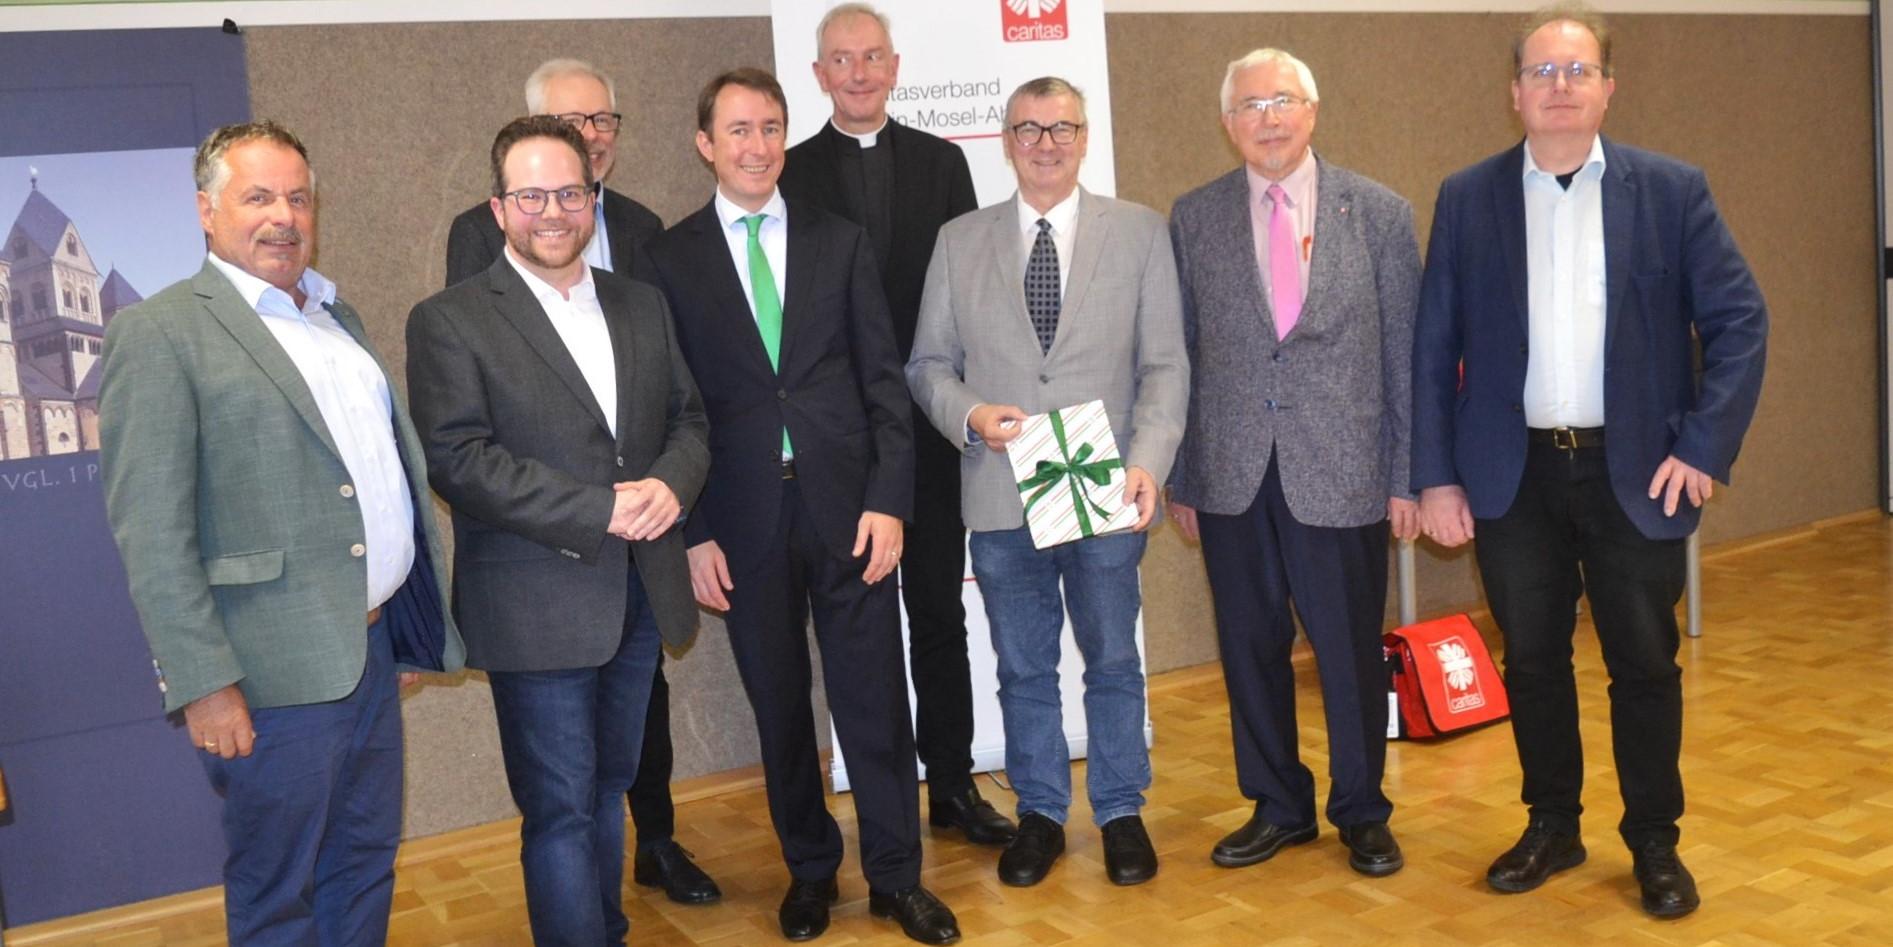 Eine herzliche Begrüßung im neuen Amt als Geschäftsführer des Caritasverbands erhielt Christian von Wichelhaus (Dritter v. links).